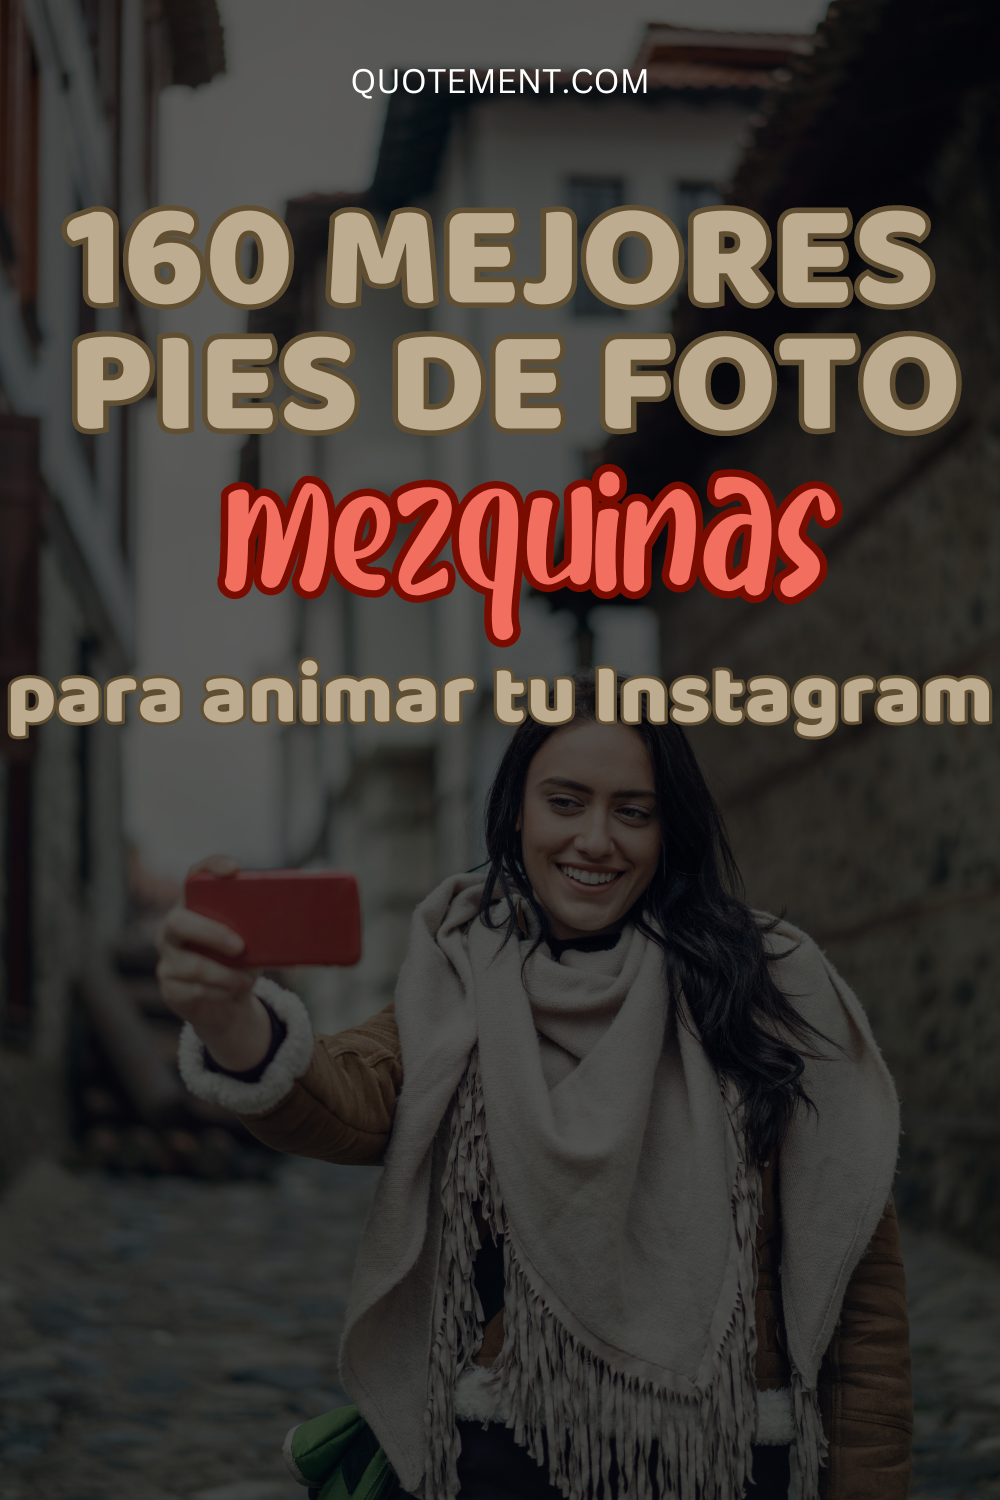 Los 160 mejores pies de foto para animar tu Instagram